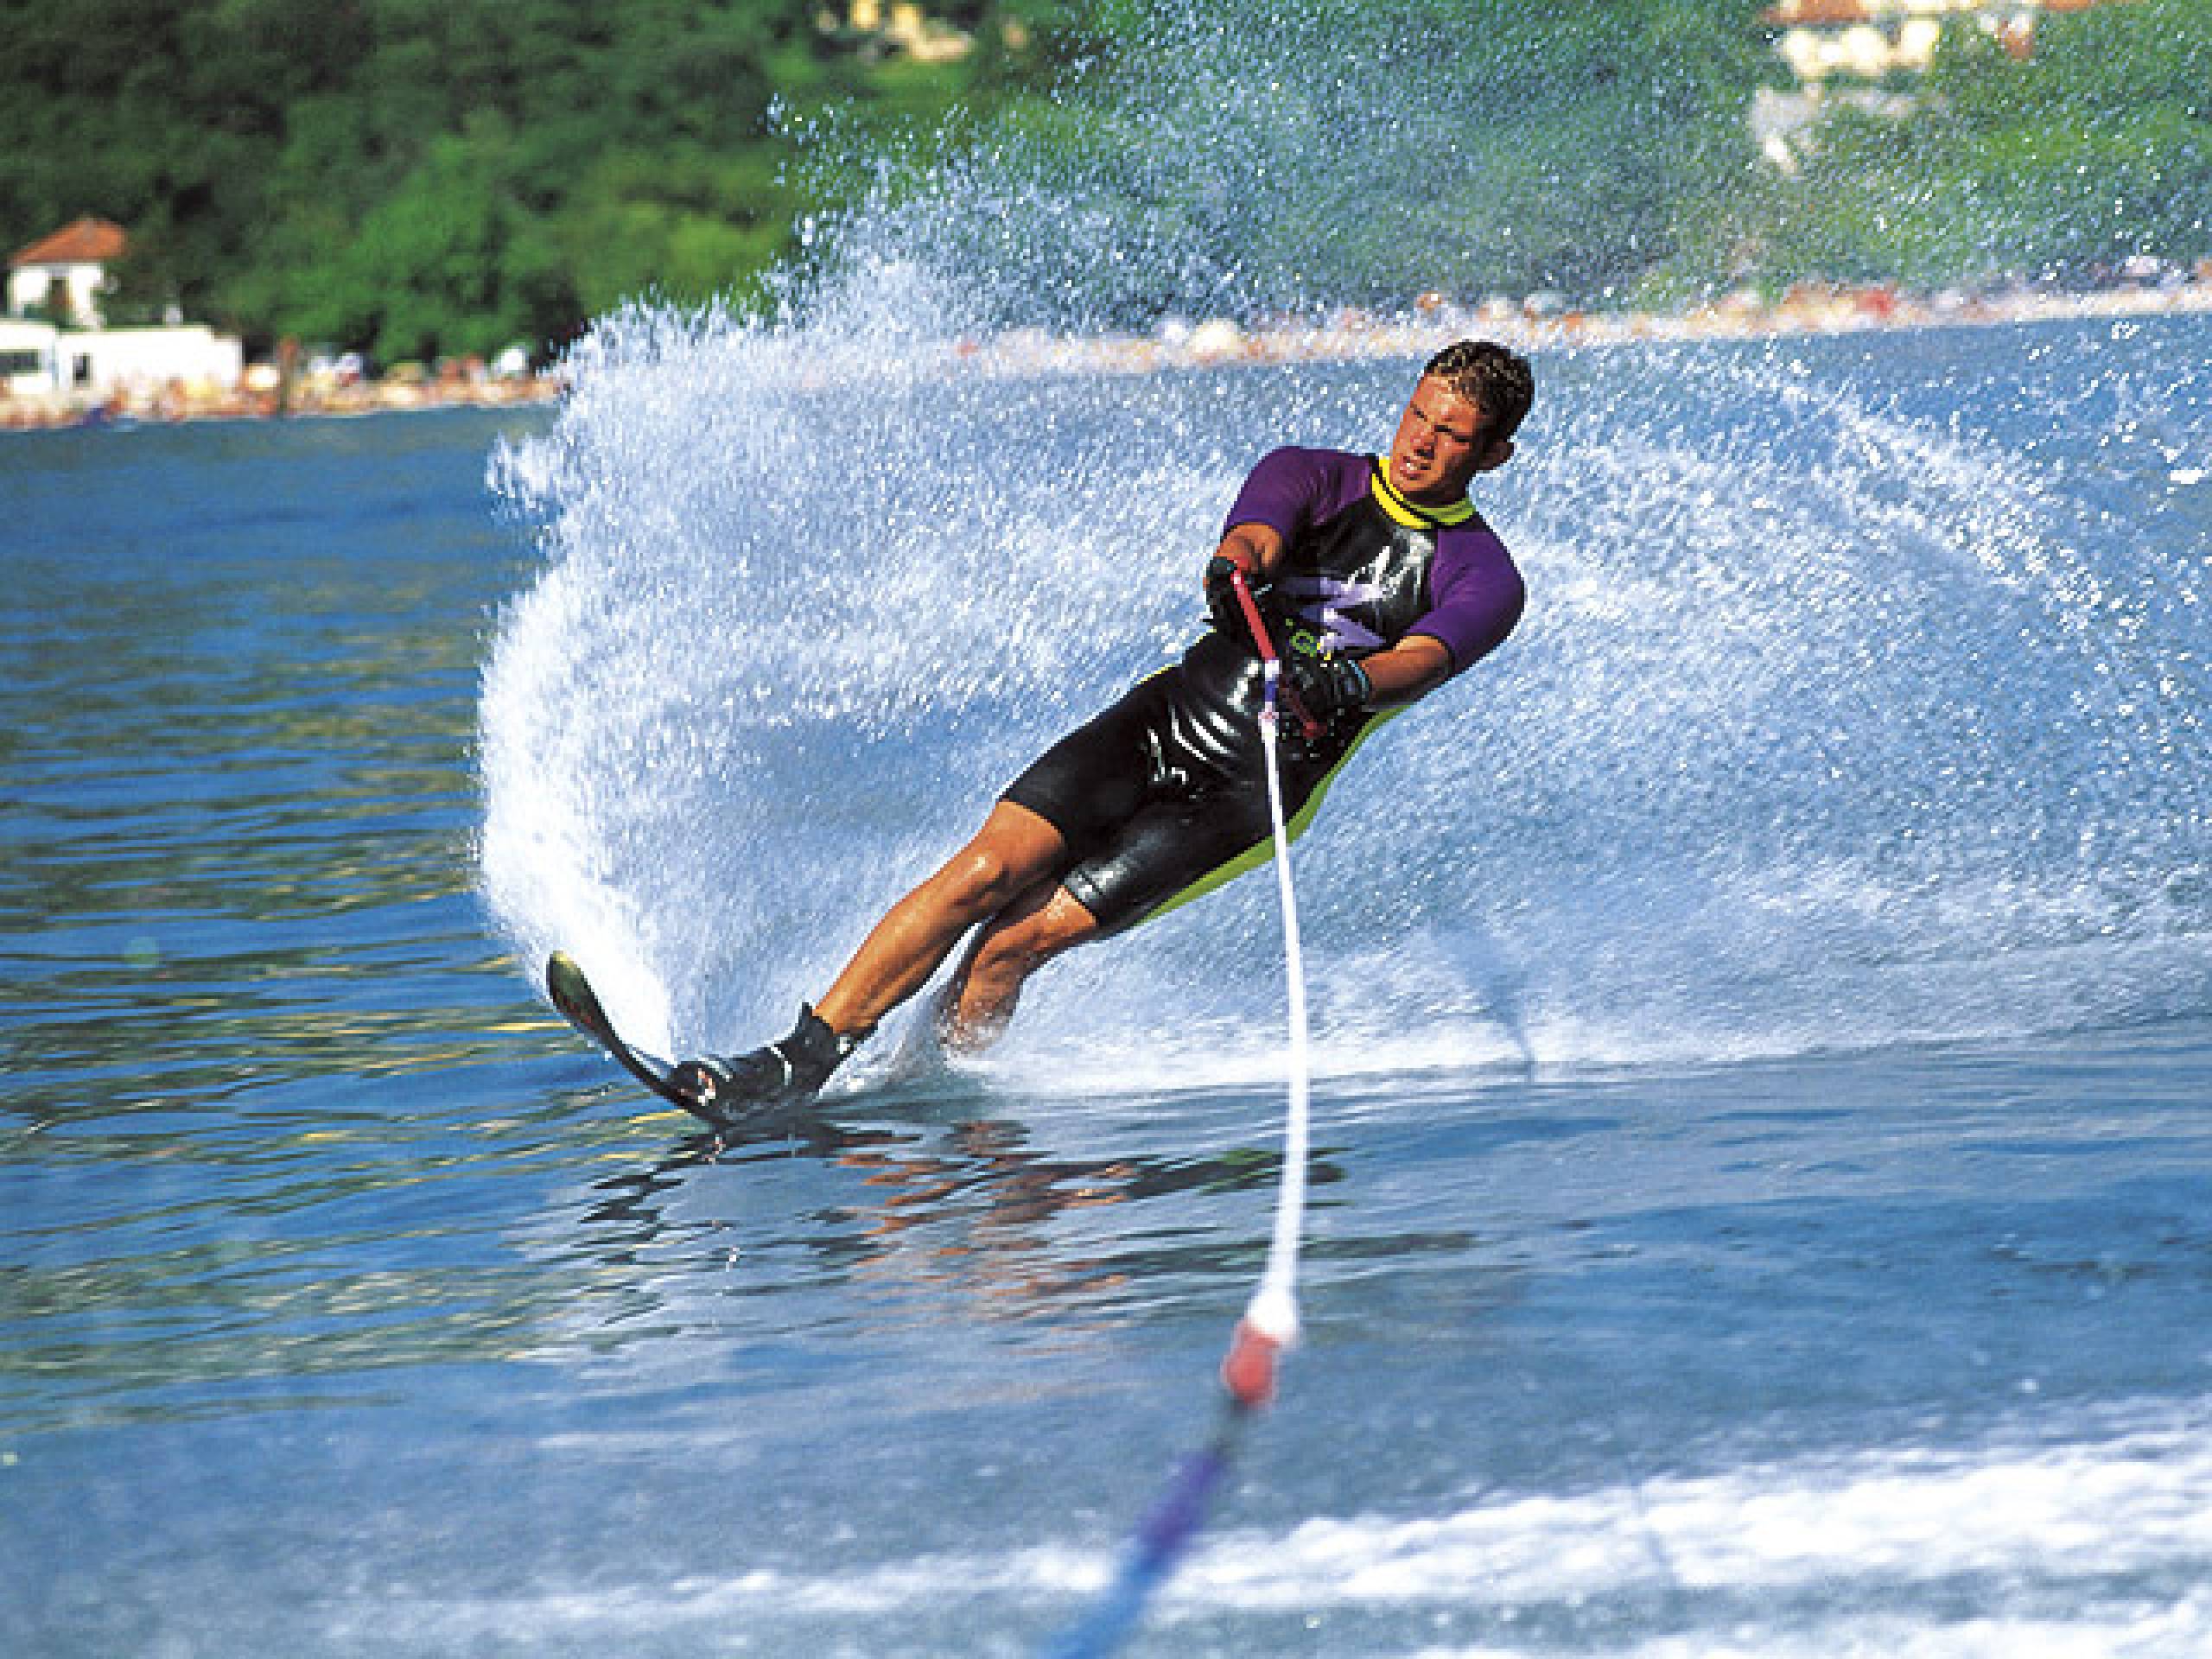 Водные лыжи - вид активного водного вида спорта и отдыха